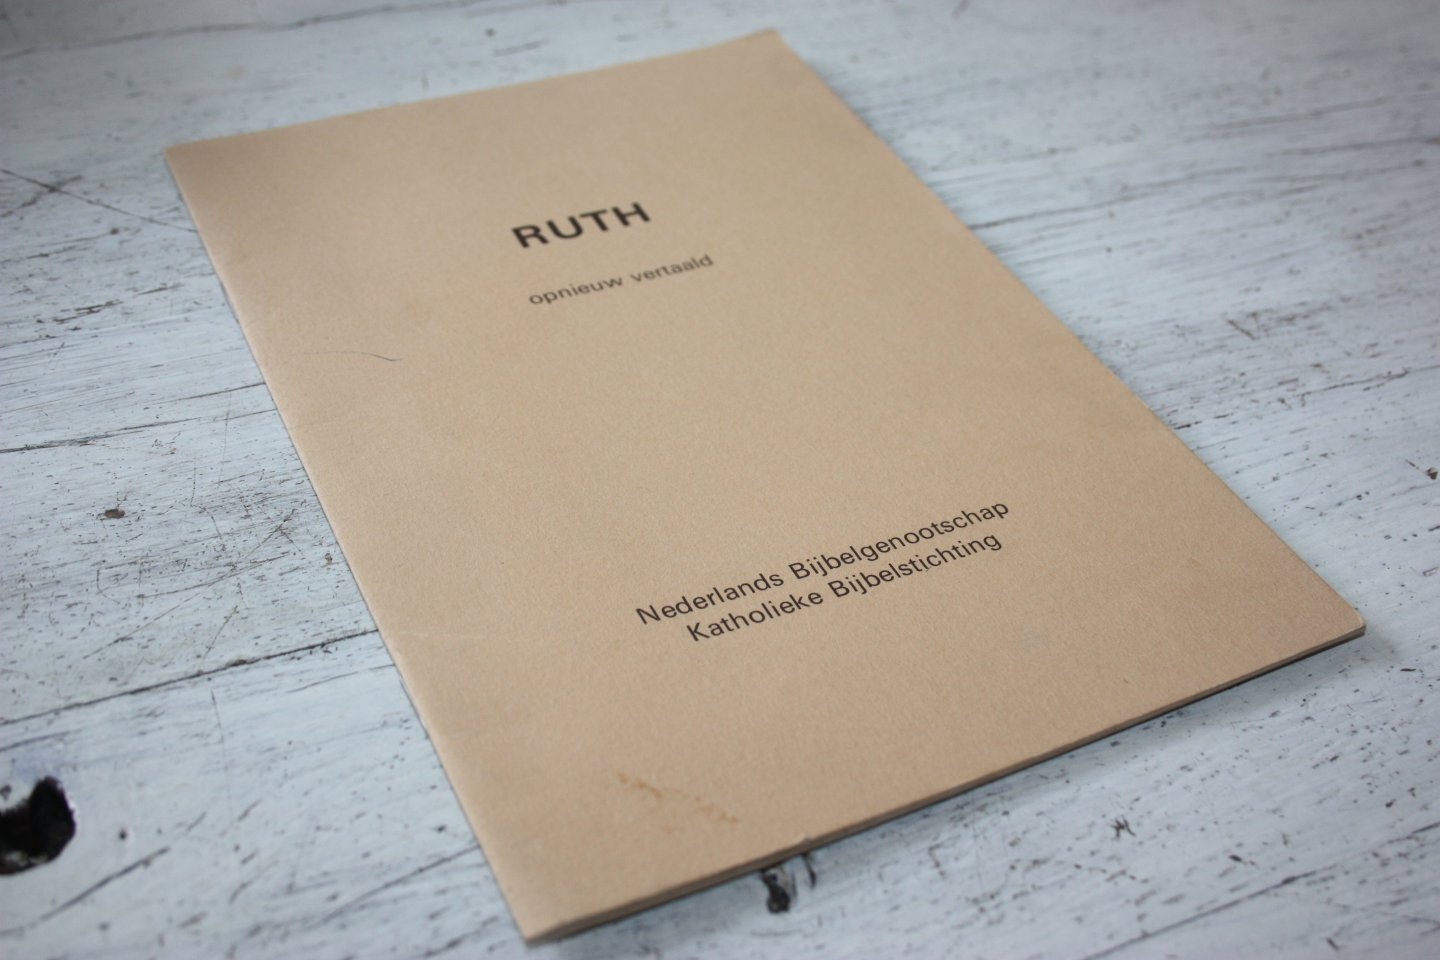 Nederlandse Bijbelgenootschap / Katholieke Bijbelstichting - RUTH opnieuw vertaald